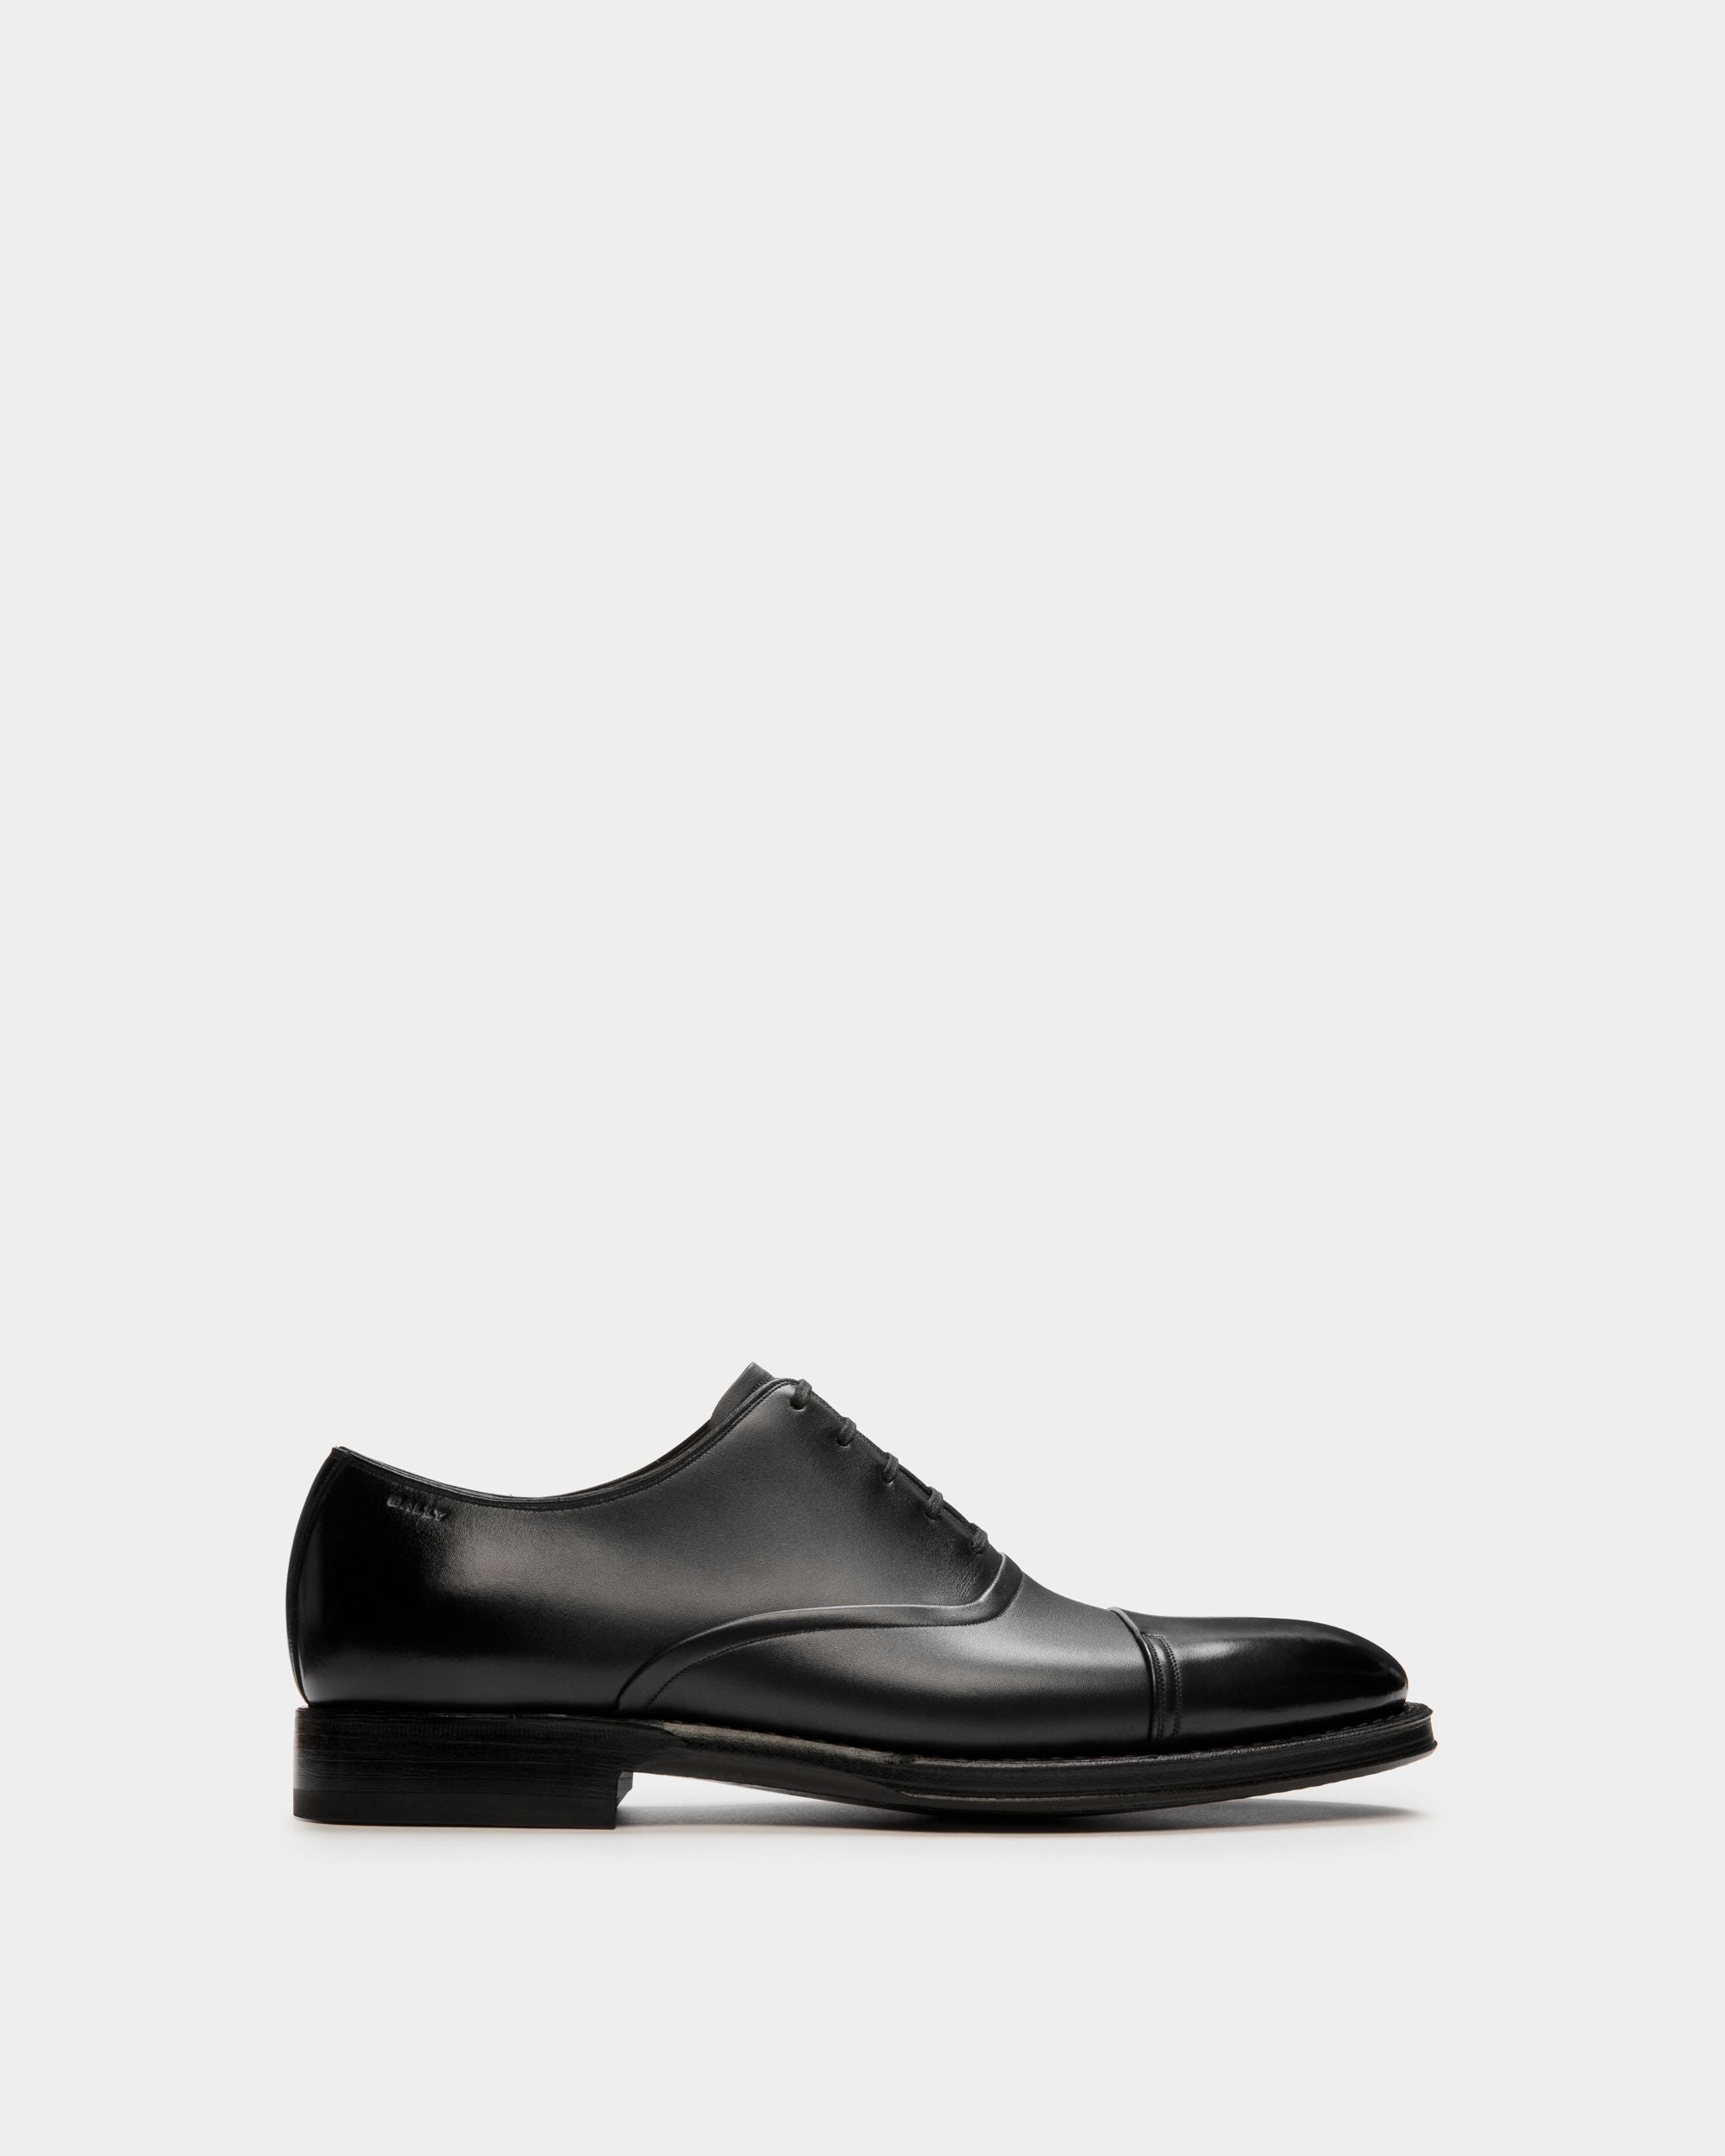 Scribe Un | Oxford-Schuh für Damen aus schwarzem Leder | Bally | Still Life Seite